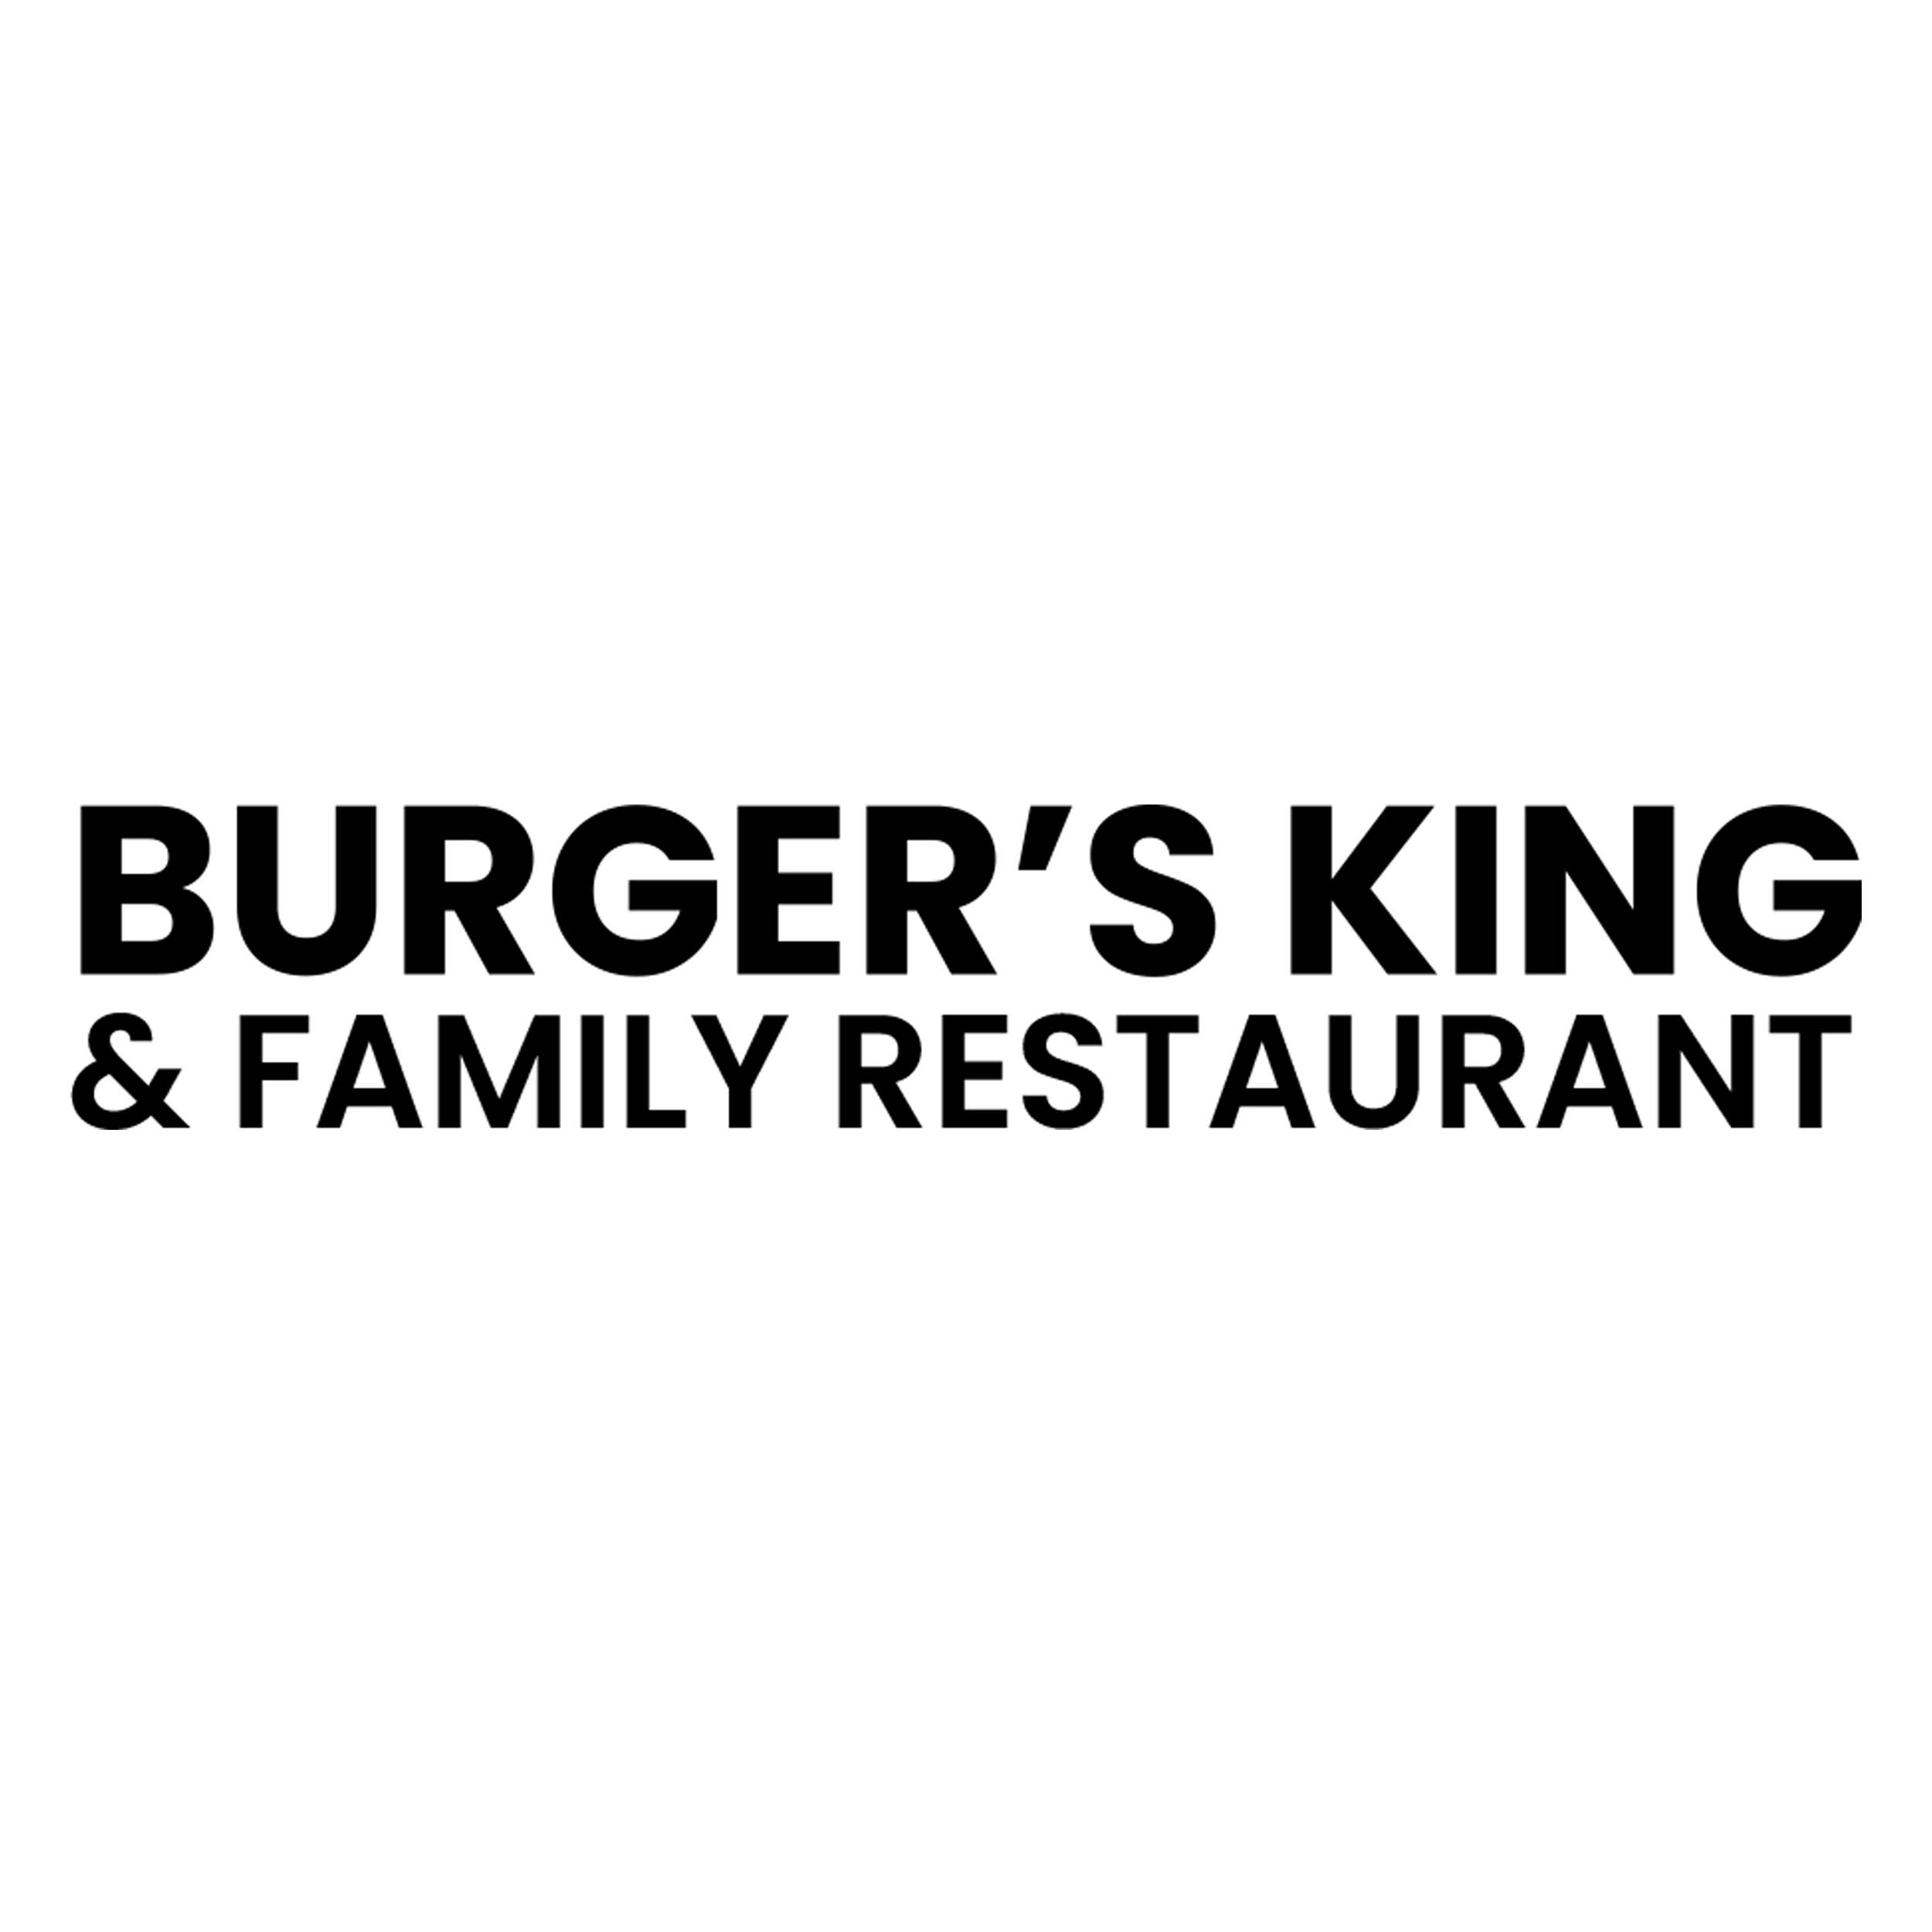 Burger's King & Family Restaurant